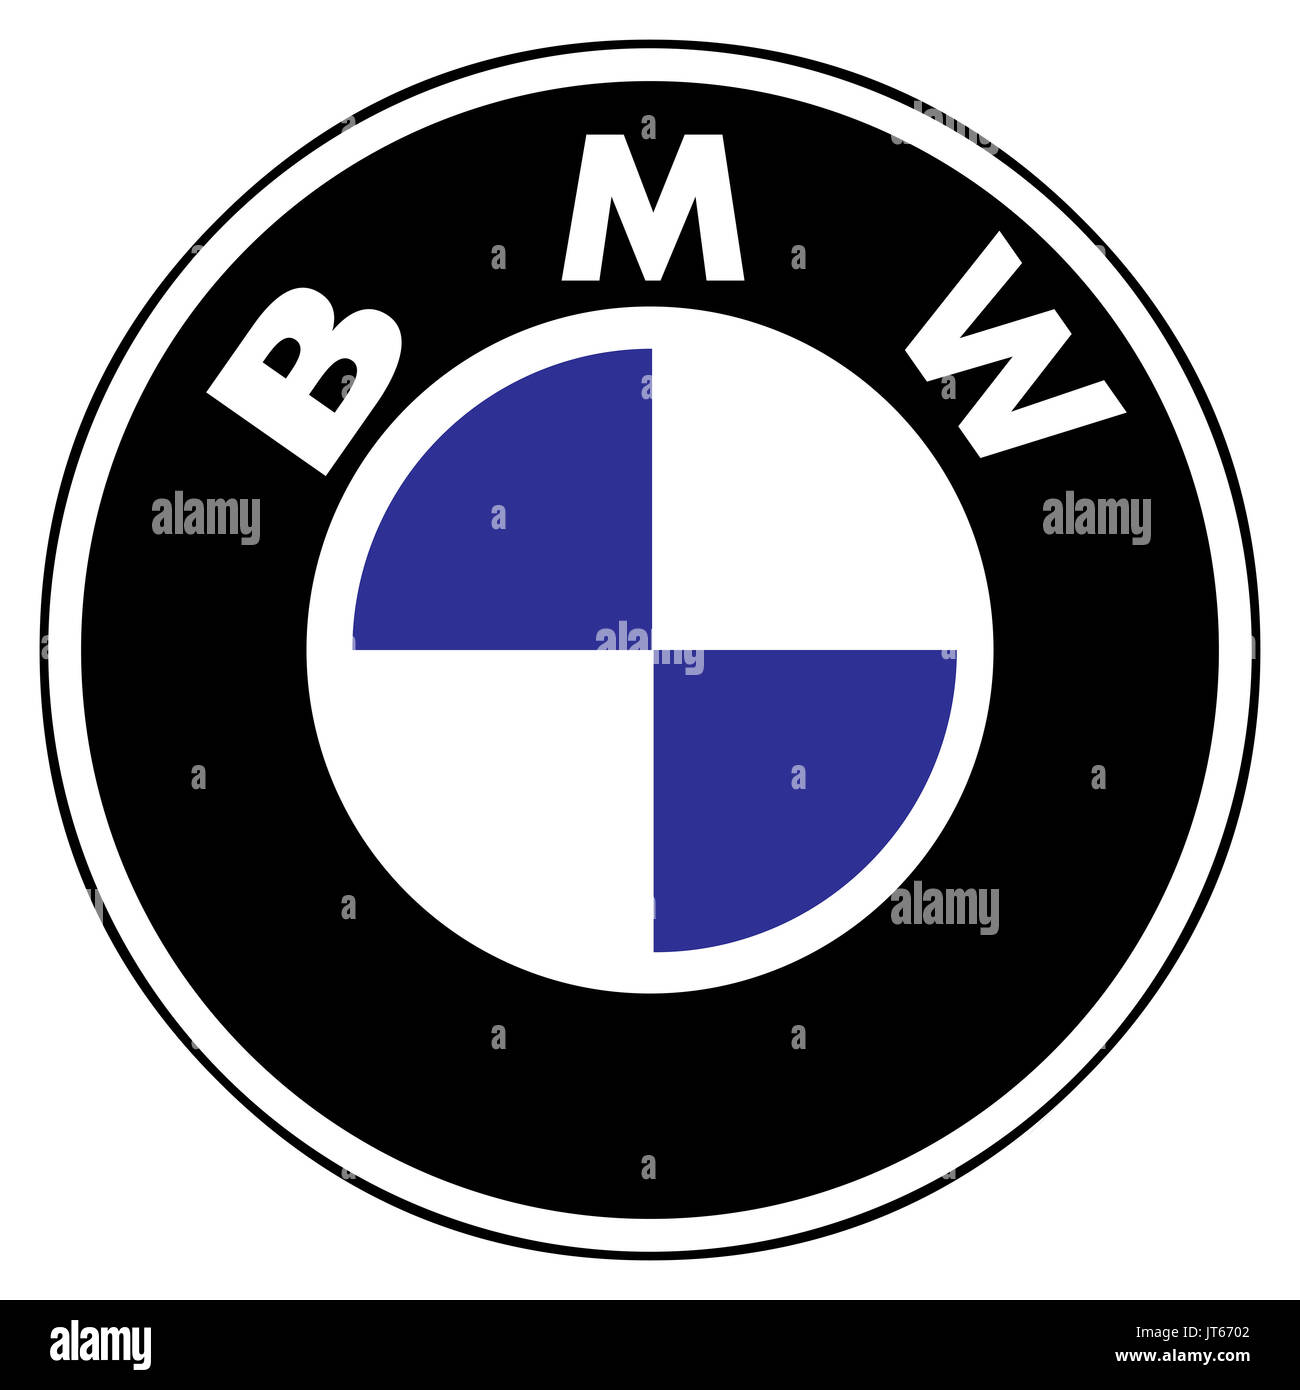 BMW, tedesco auto aziendale, logo della società DAX 30 aziende Foto Stock